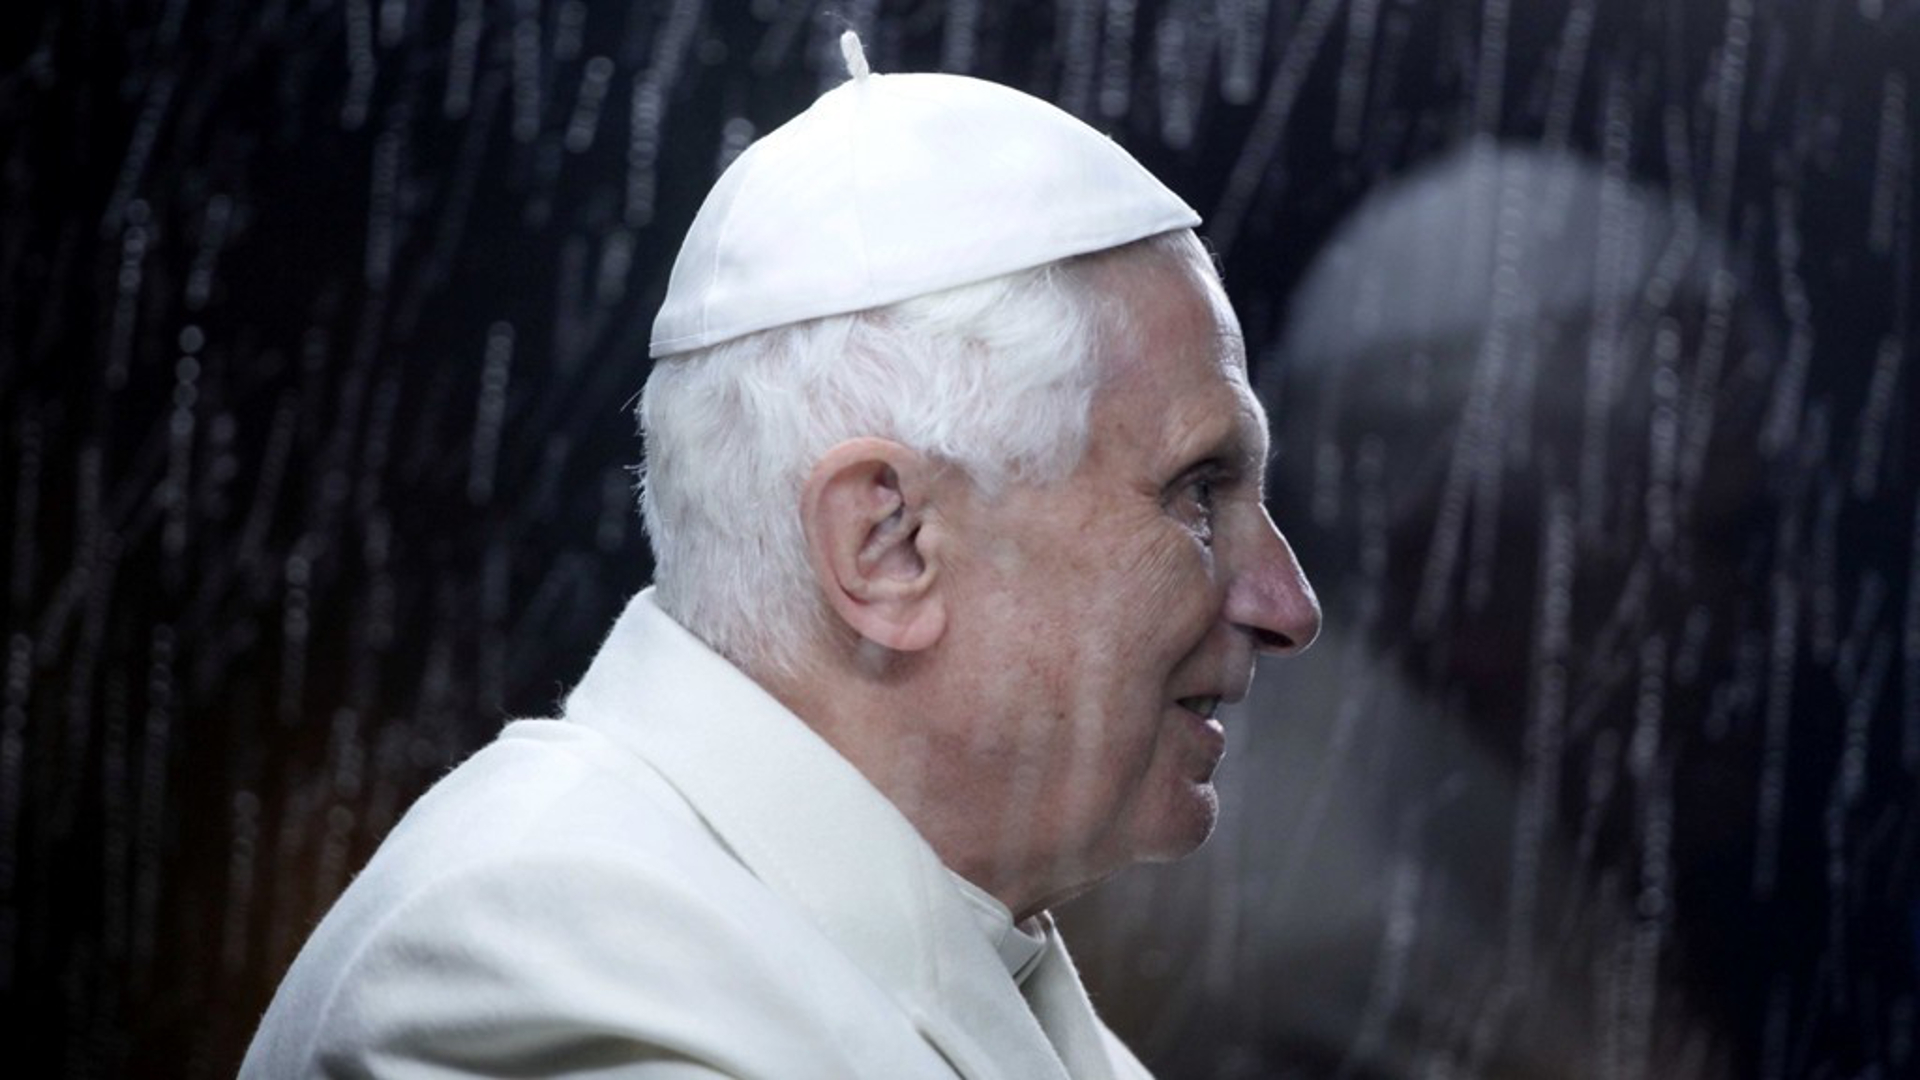 Auch der Umgang von Joseph Ratzinger - heute emeritierter Papst Benedikt XVI. - mit Missbrauchsfällen wird untersucht.